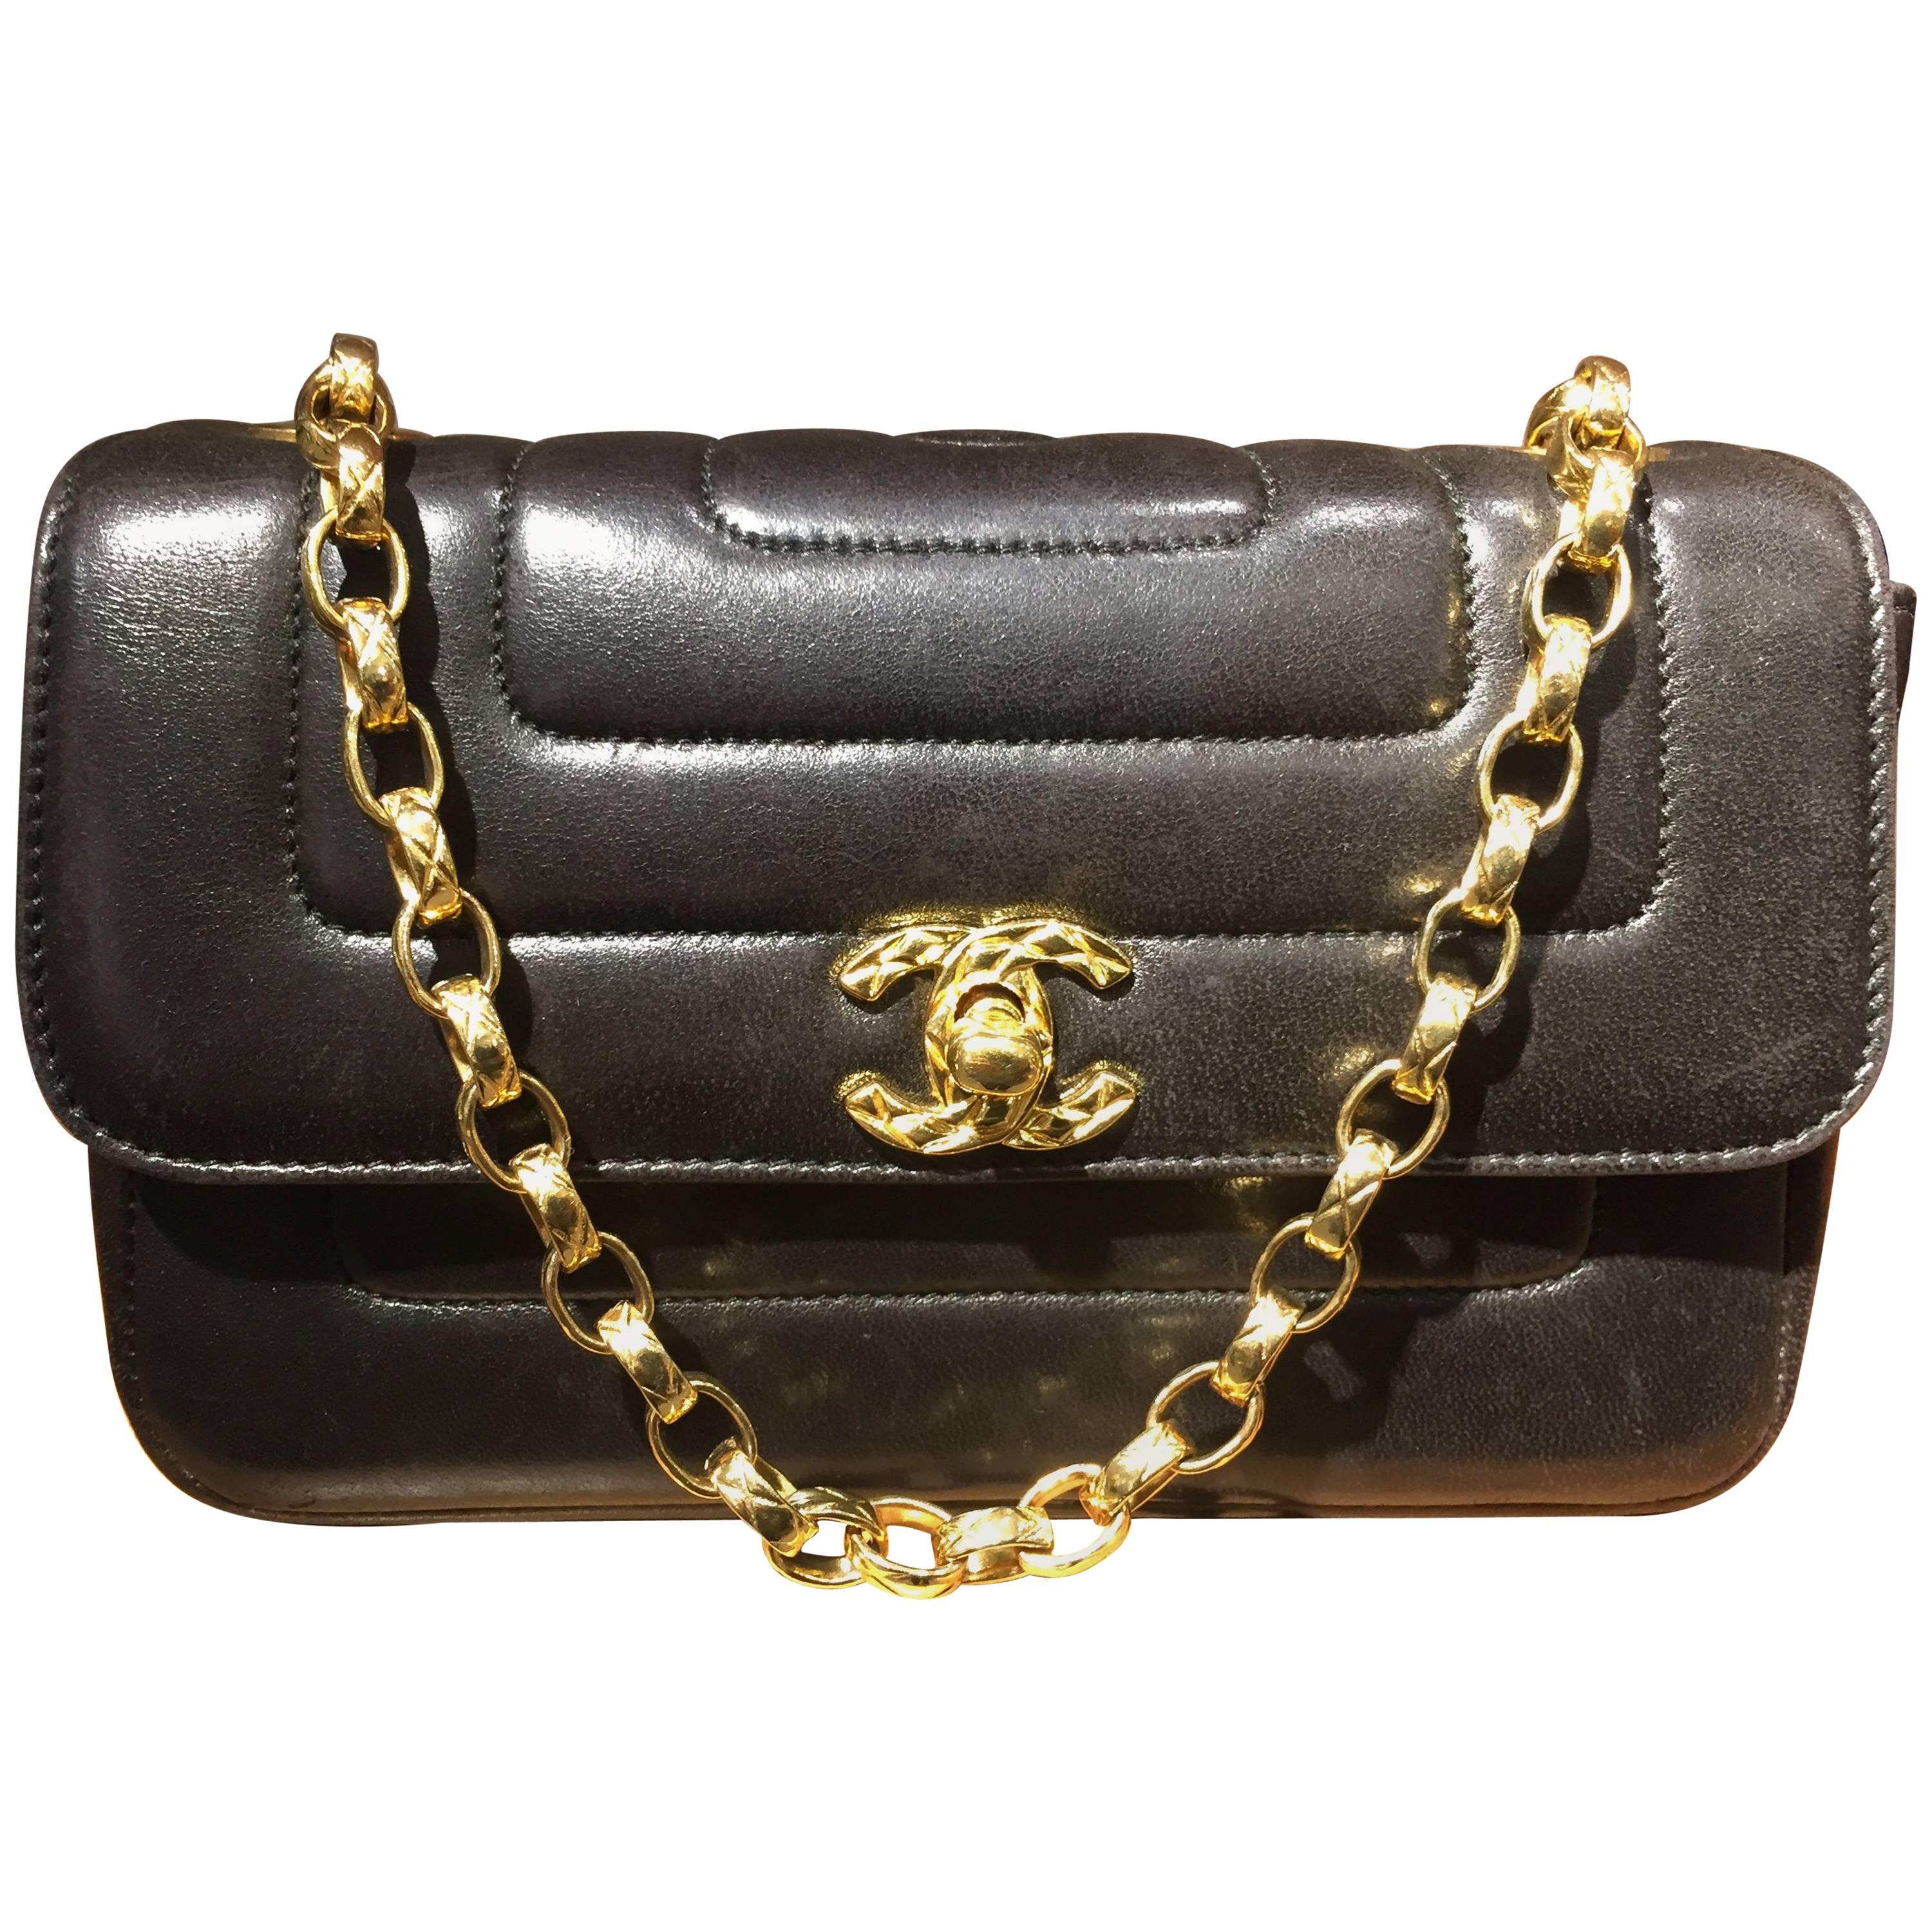 Chanel Black Lambskin Leather Diana Shoulder Bag